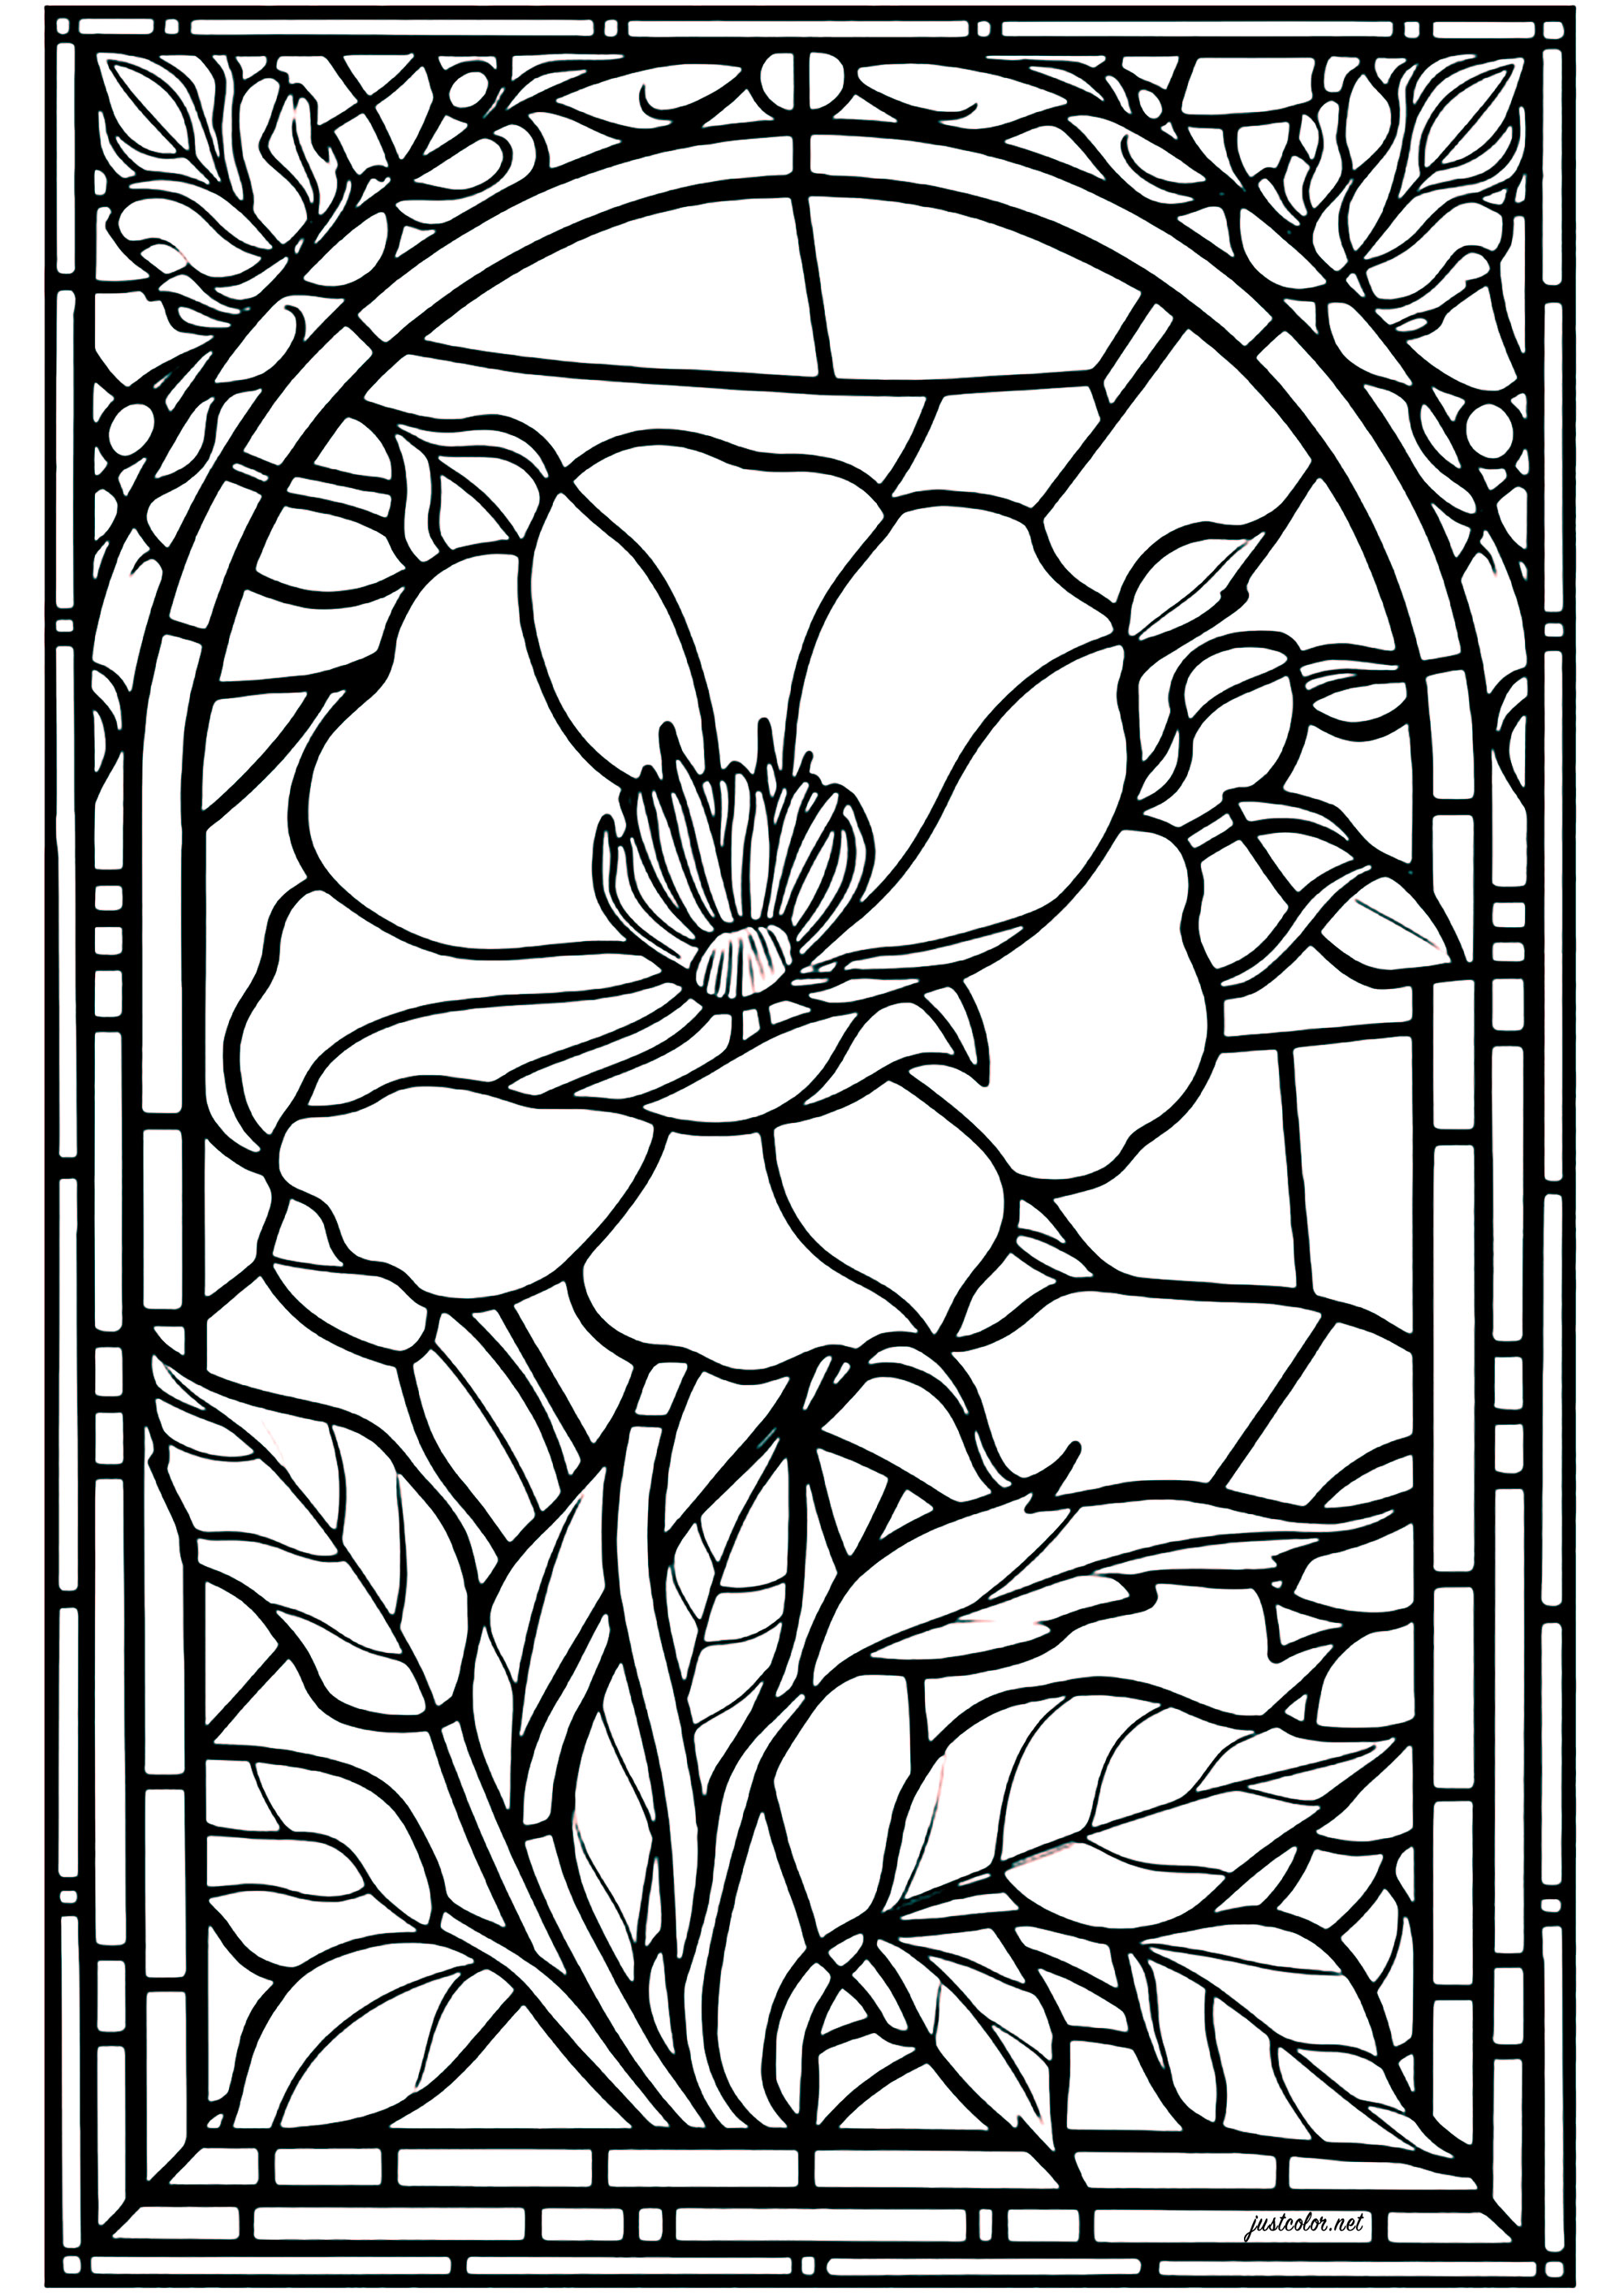 Ausmalen eines Buntglasfensters mit einer hübschen Blume als Hauptmotiv